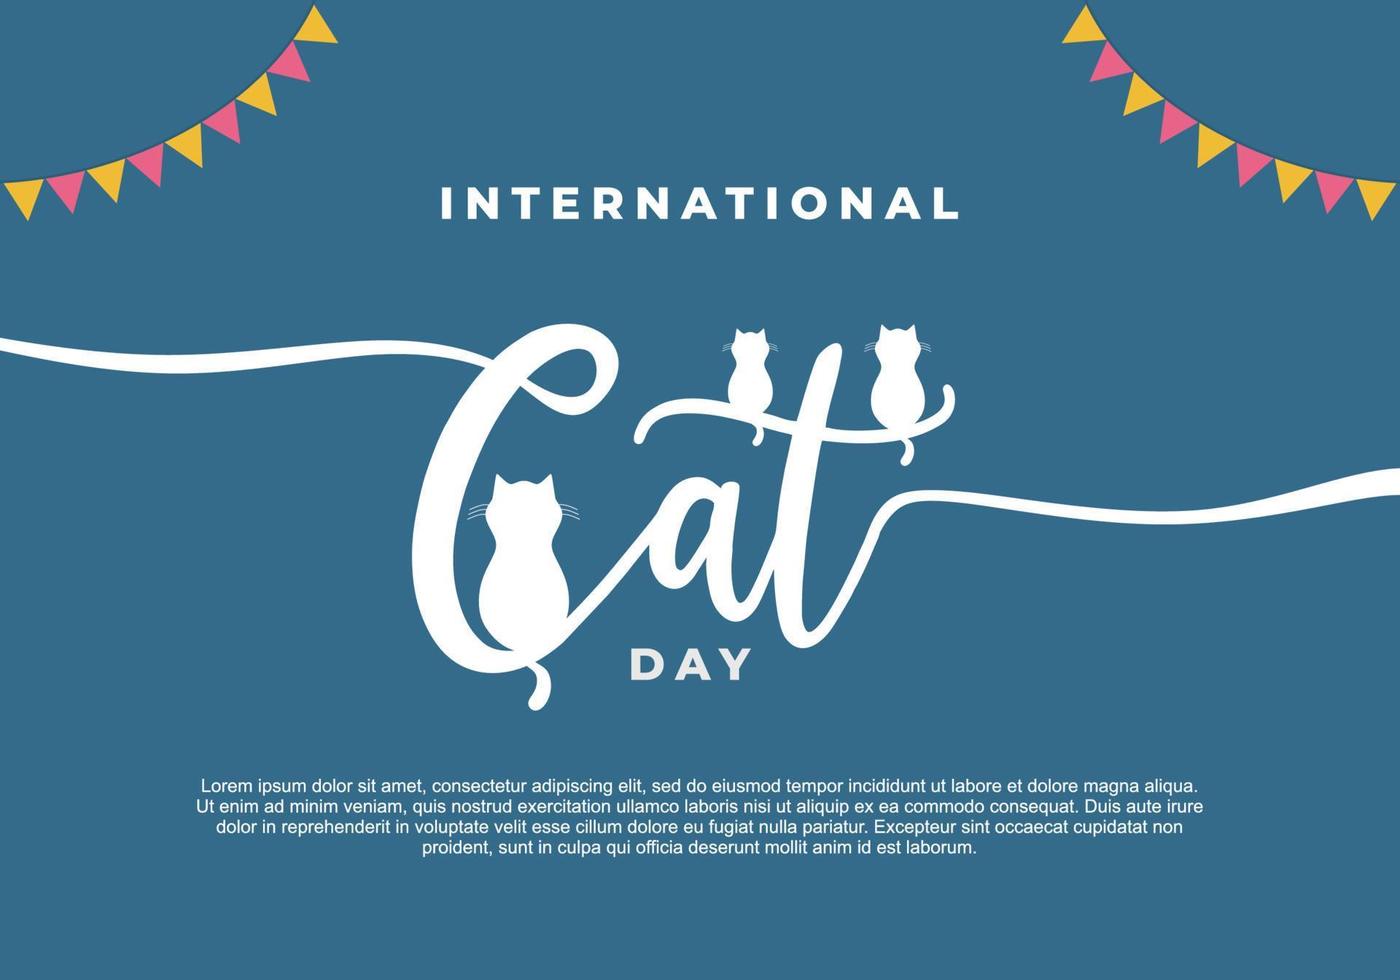 fond pour la journée internationale du chat le 8 août avec un dessin animé drôle vecteur